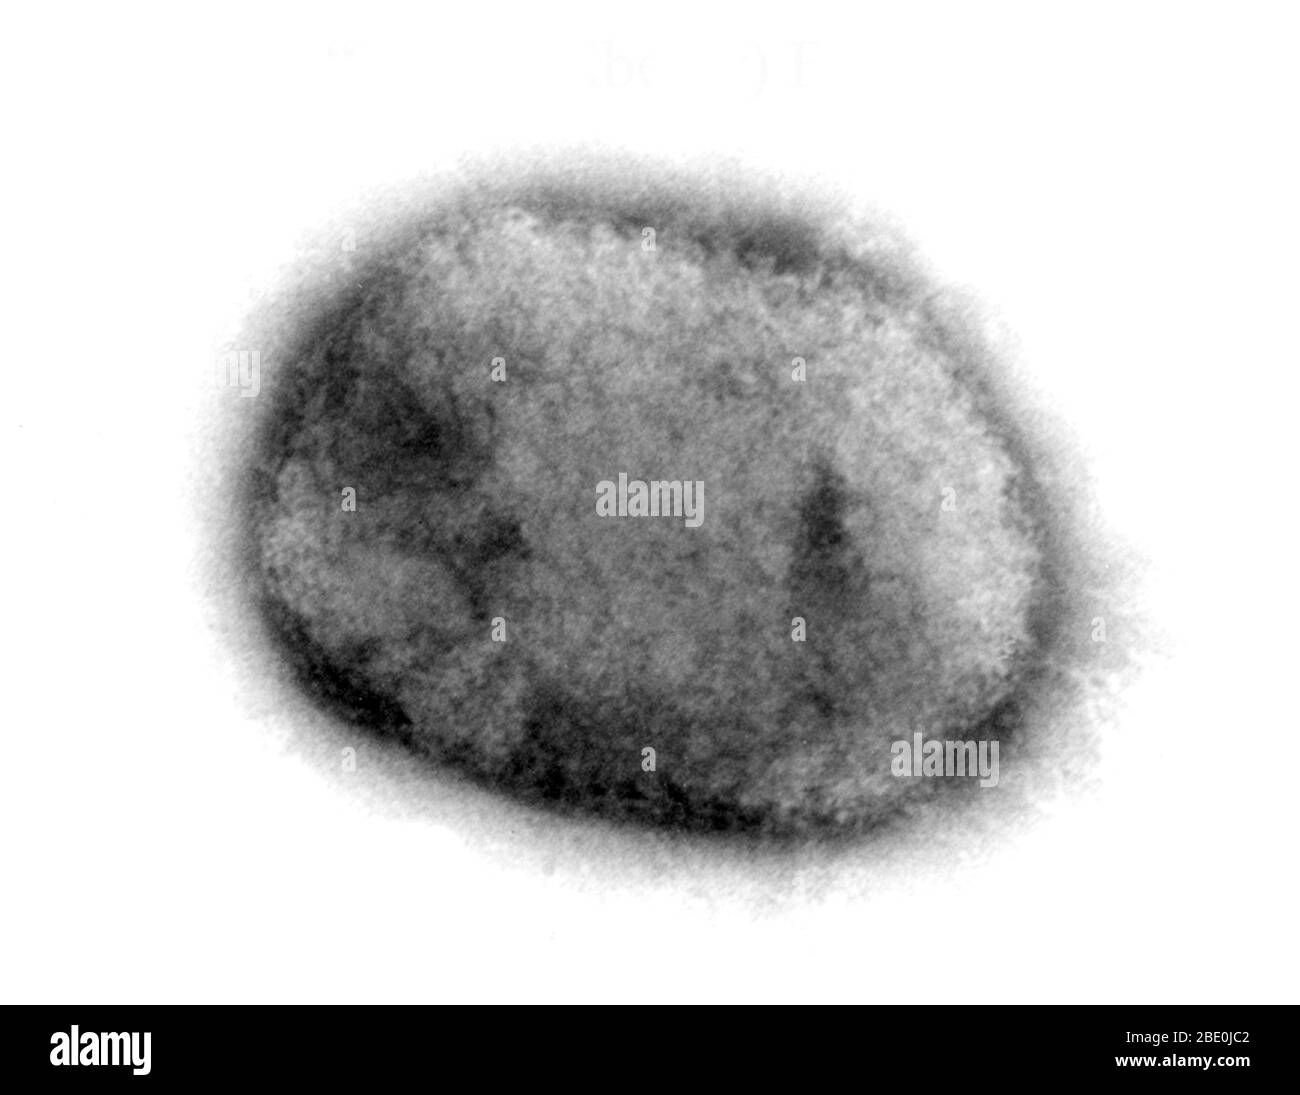 Micrografia a trasmissione a colorazione negativa (TEM) che dimostra il virus monkeypox a forma di mattone da una coltura cellulare. Il virione di gelso superficiale è ricoperto da filamenti corti e sviati. Il virus Monkeypox (MPV) è un DNA a doppio filamento, un virus zoonotico e una specie del genere Orthopoxvirus della famiglia Poxviridae. È uno degli ortopossvirus umani che include virus di variola (VARV), cowpox (CPX) e vaiolo vaccino (VACV). Ma non è un antenato diretto, né un discendente diretto del virus variola che causa il vaiolo. Il virus del monkeypox causa una malattia simile alla sma Foto Stock